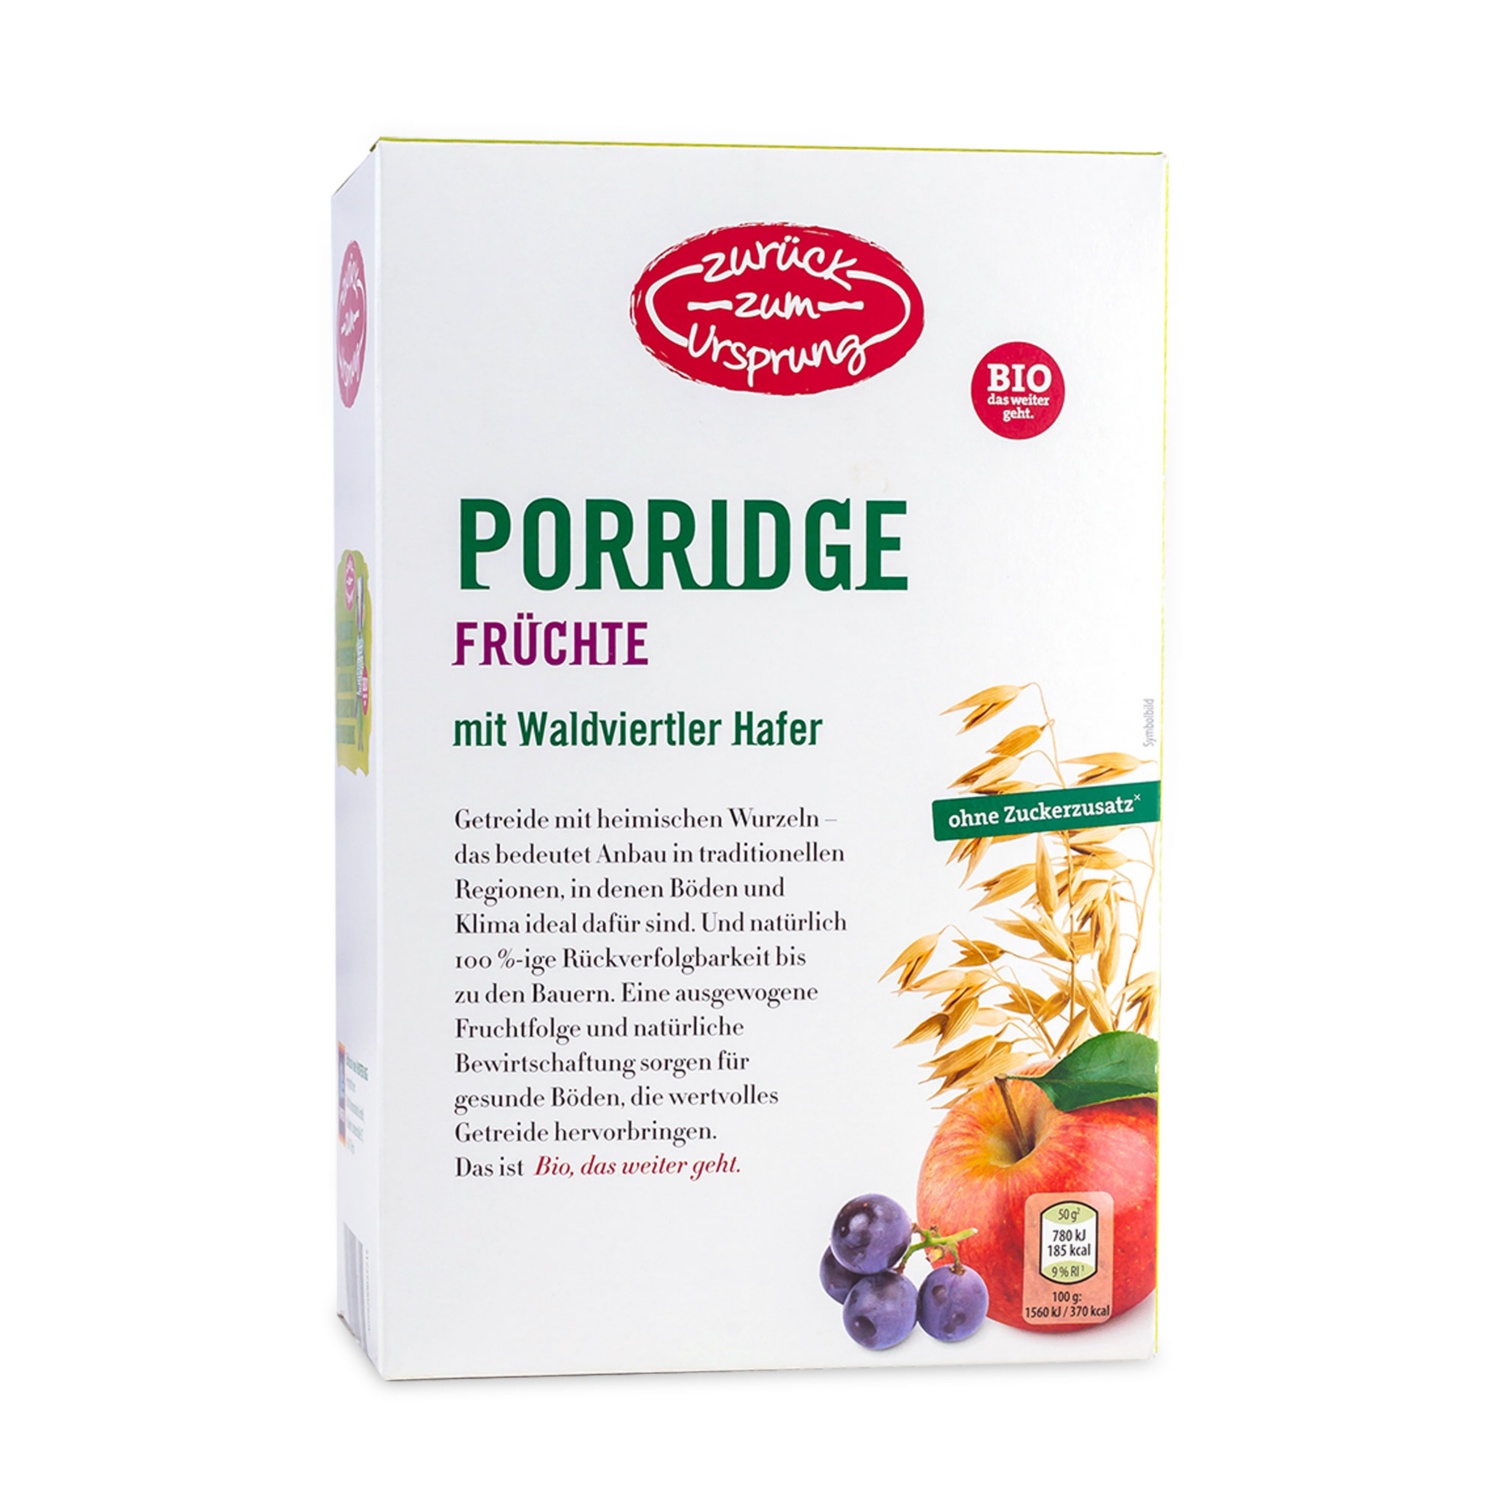 ZURÜCK ZUM URSPRUNG BIO-Porridge Früchte